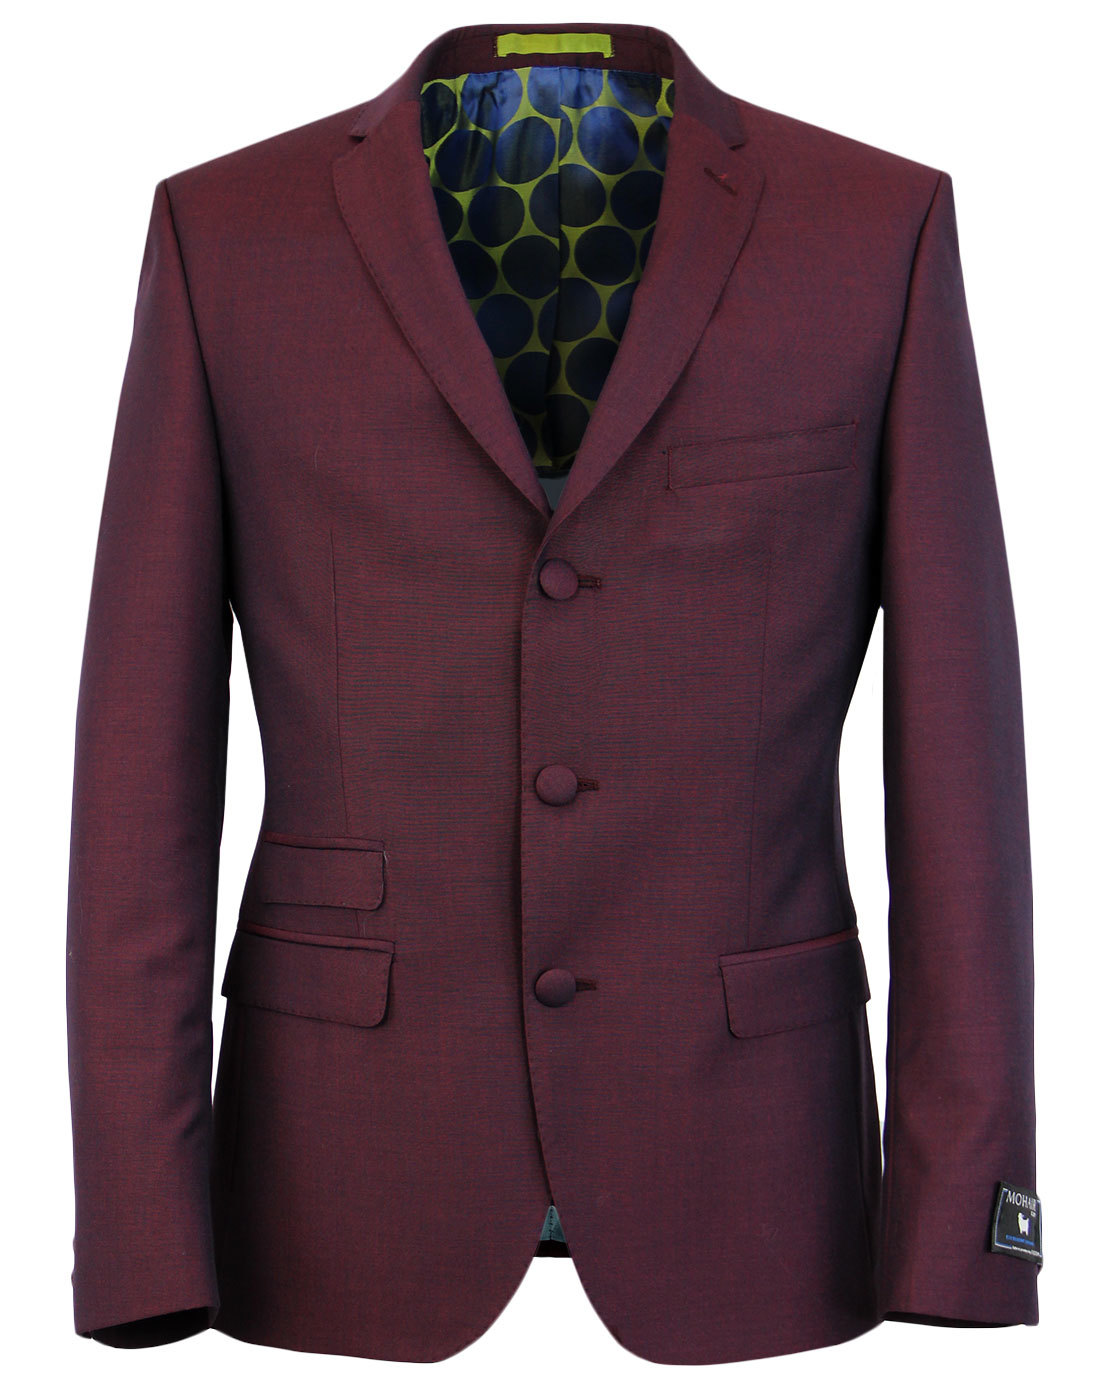 Details about   Mod Suit Red & Black Check Suit 3 Button Slim Fitting Suit 1960's 